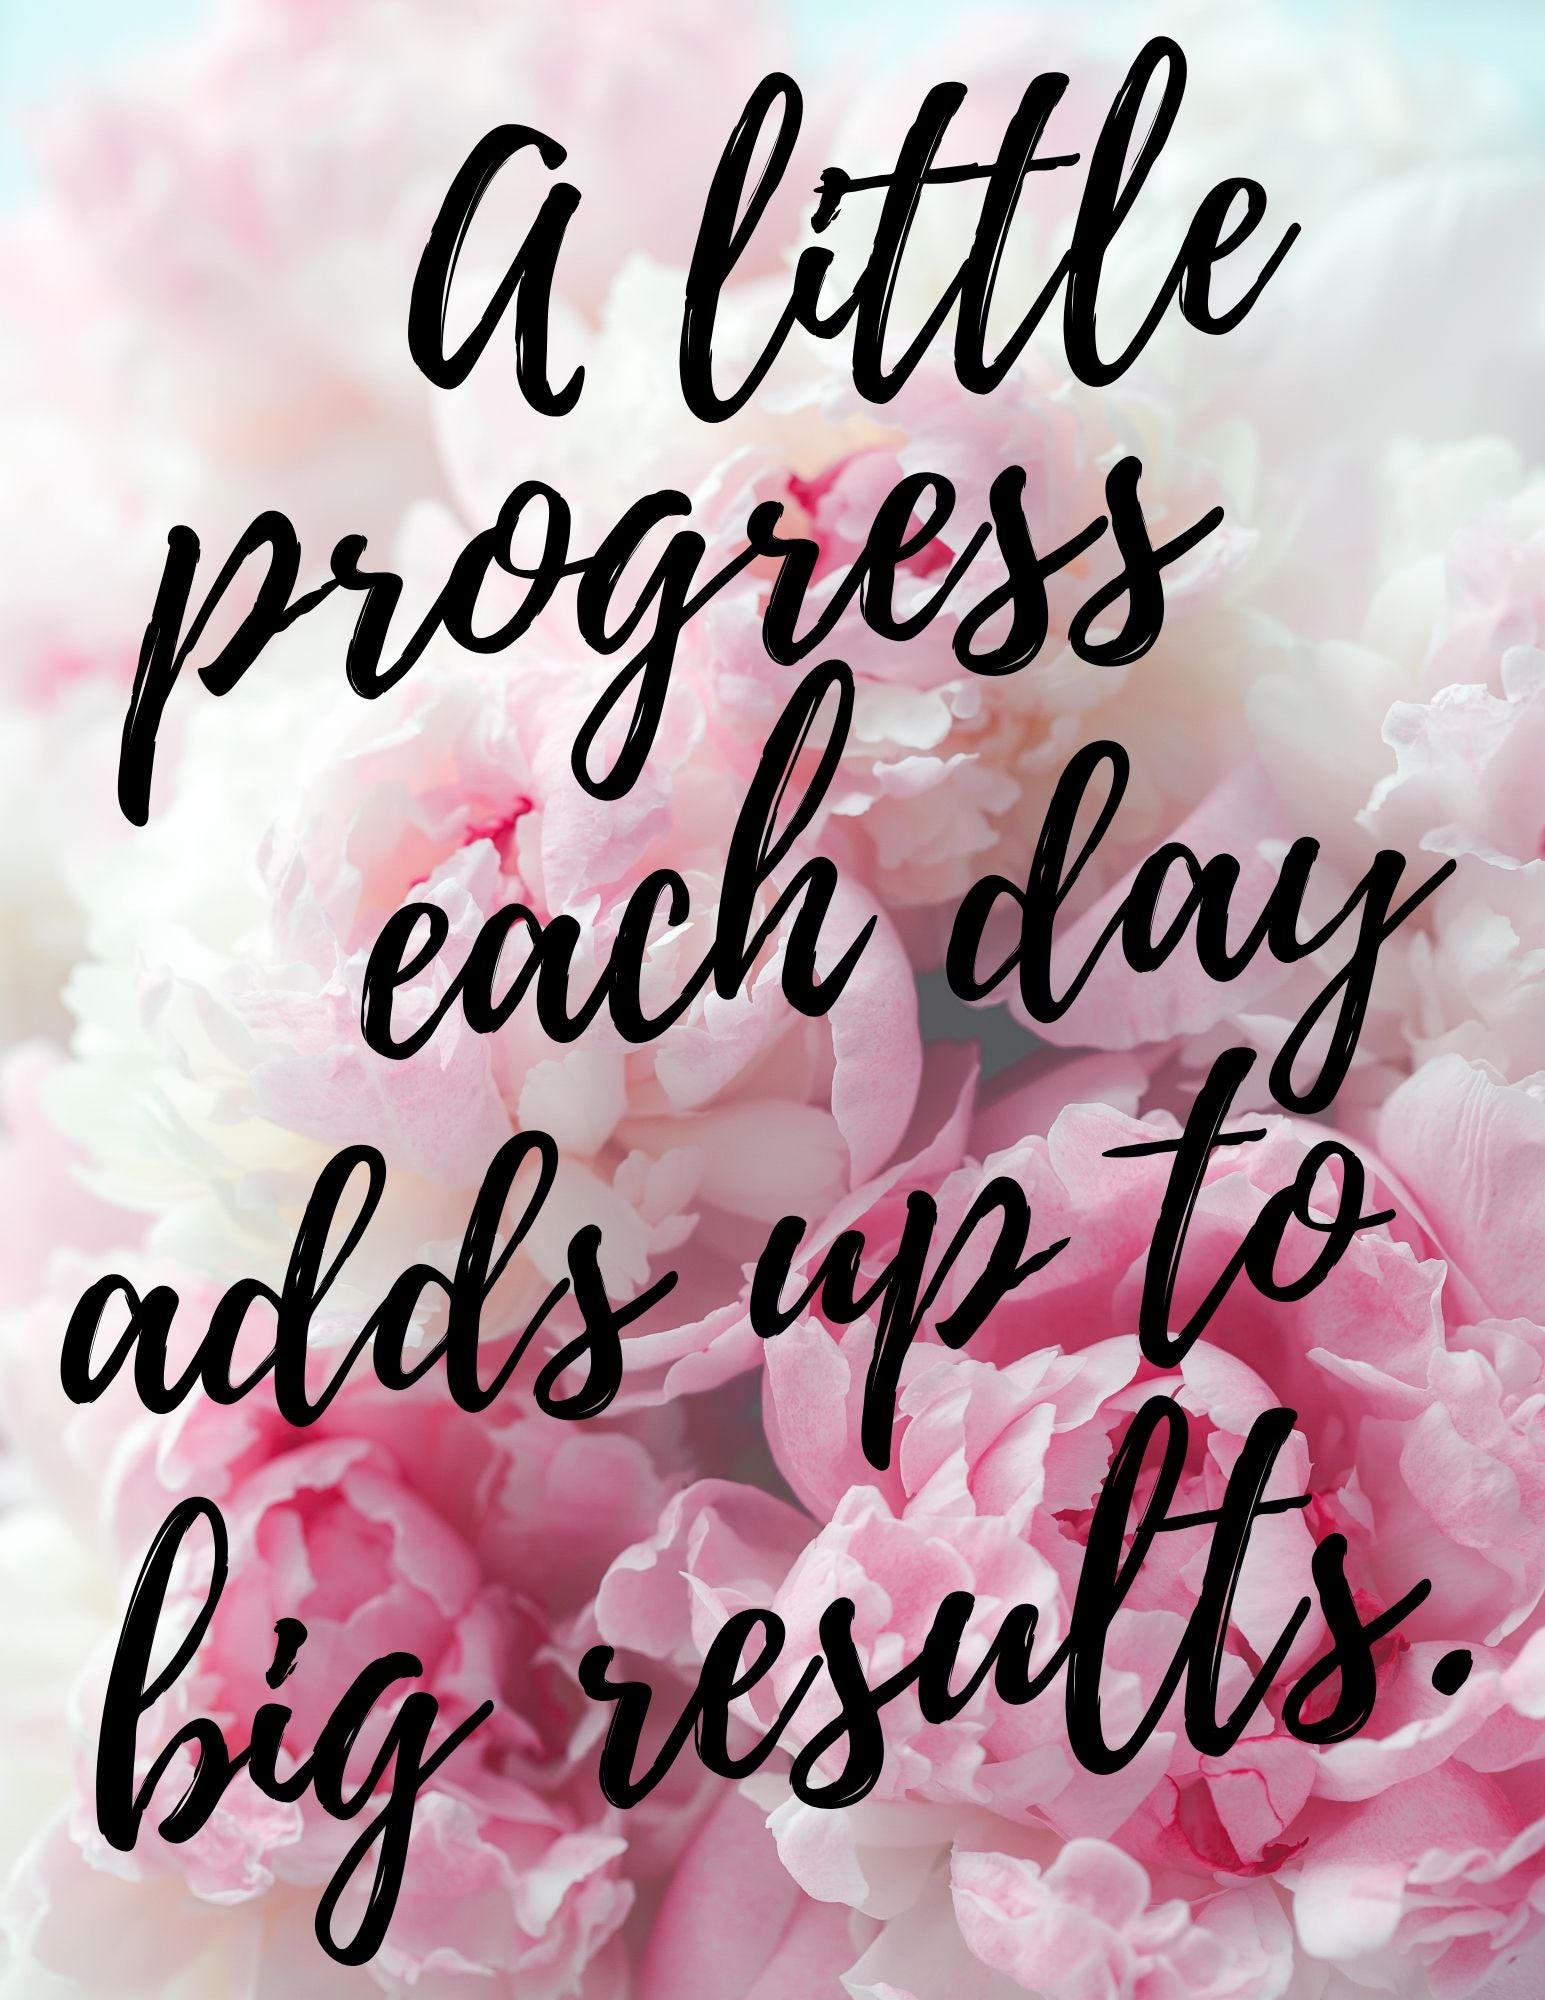 Motivational Poster "A Little Progress"